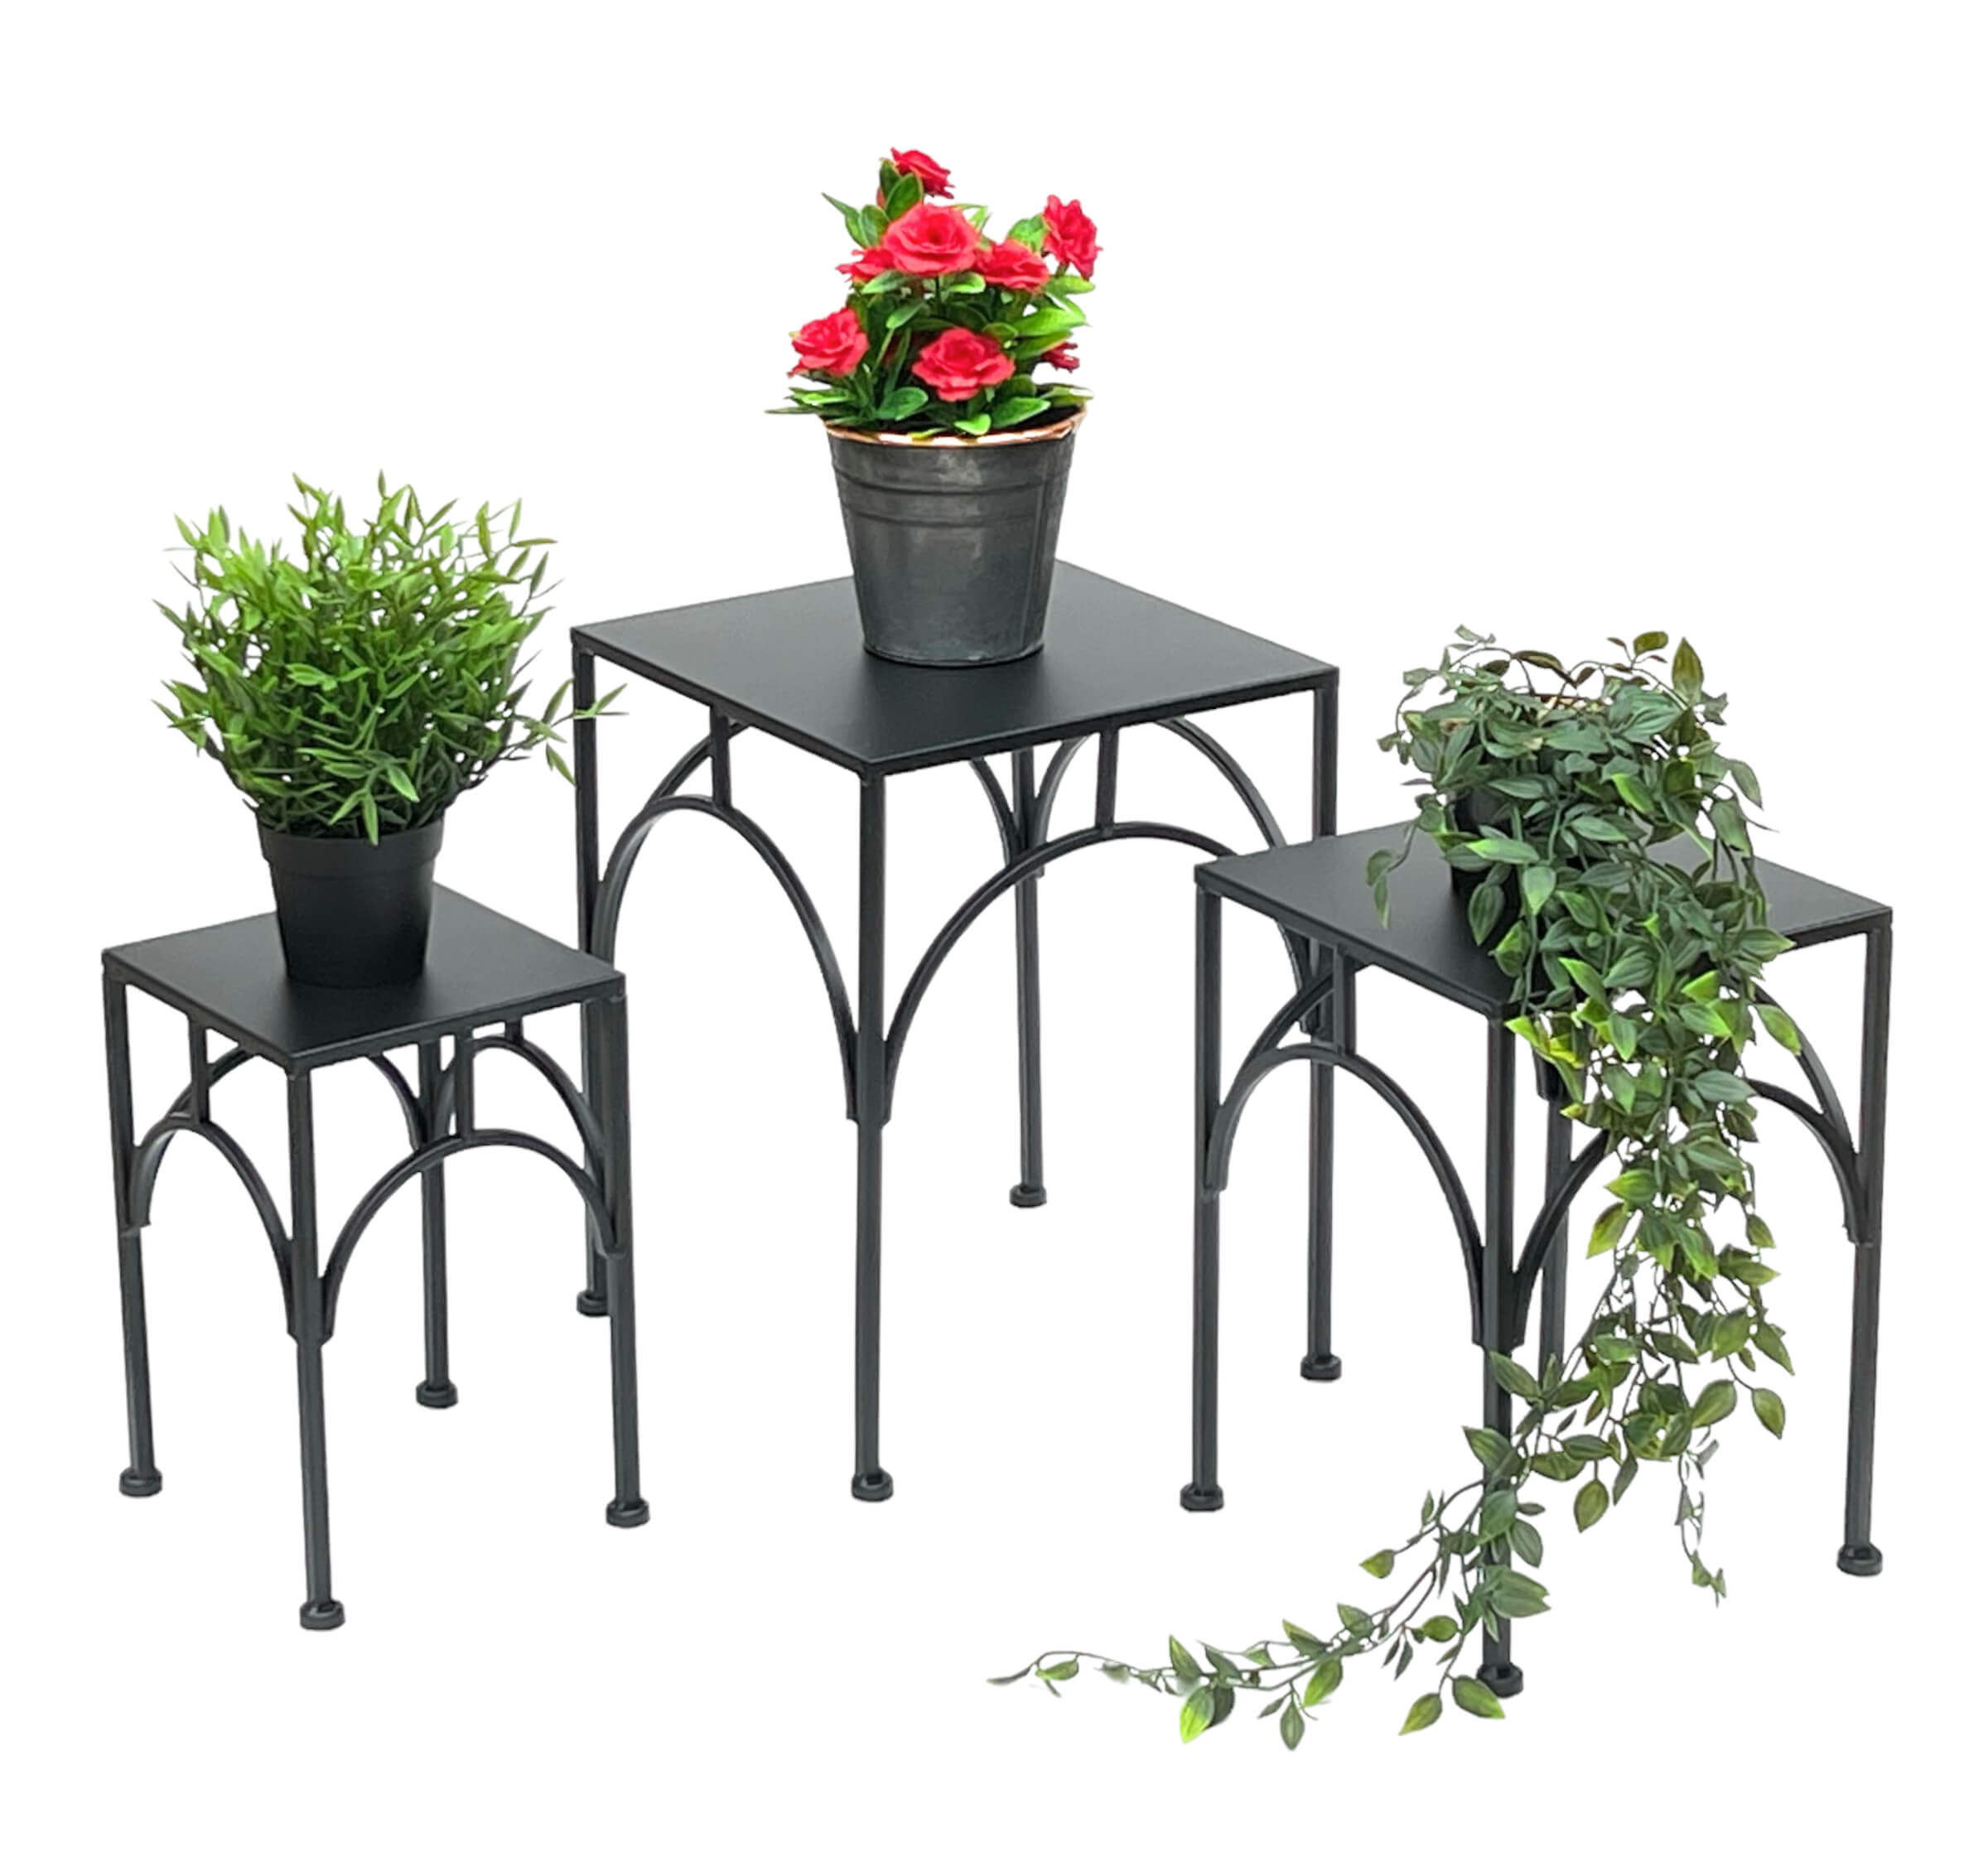 [Niedrigster Preis und höchste Qualität] DanDiBo Blumenhocker Pflanzenständer Beistelltisch Blumensäule Blumenständer 96449 Schwarz Modern-DanDiBo Eckig Set 3er Metall